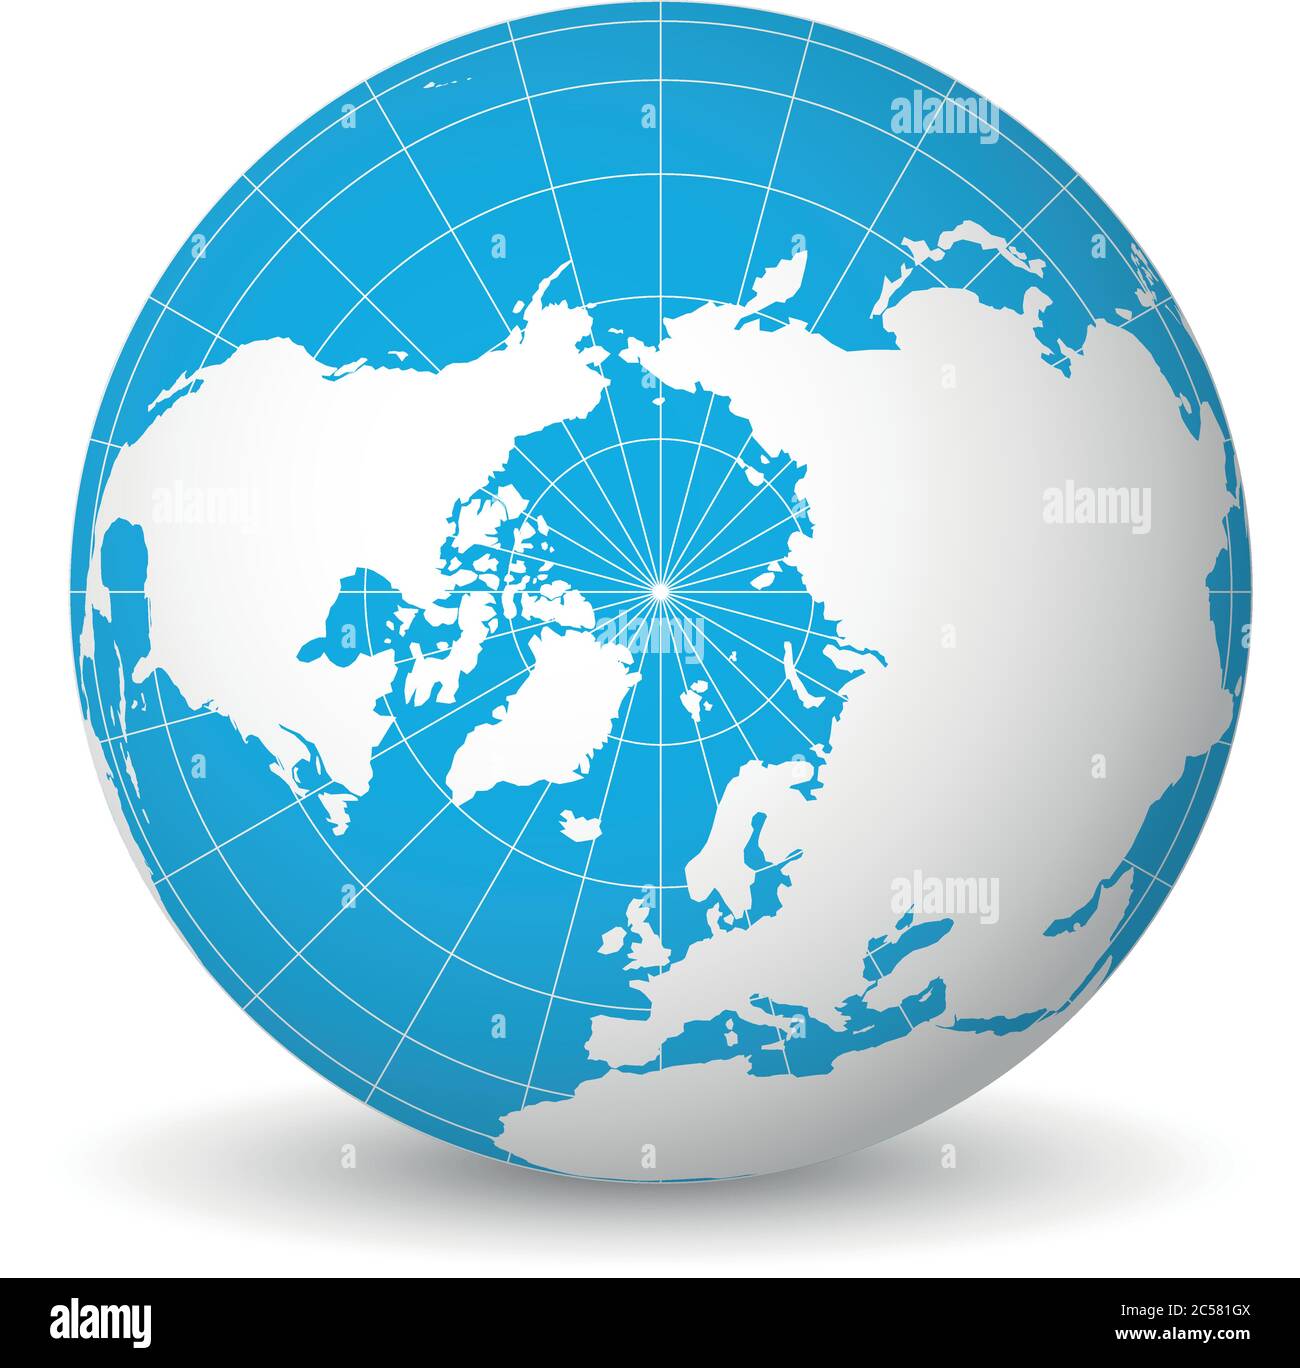 Globe terrestre avec carte verte du monde et mers bleues et océans axés sur l'océan Arctique et le pôle Nord. Avec des méridiens blancs fins et des parallèles. Illustration vectorielle 3D. Illustration de Vecteur